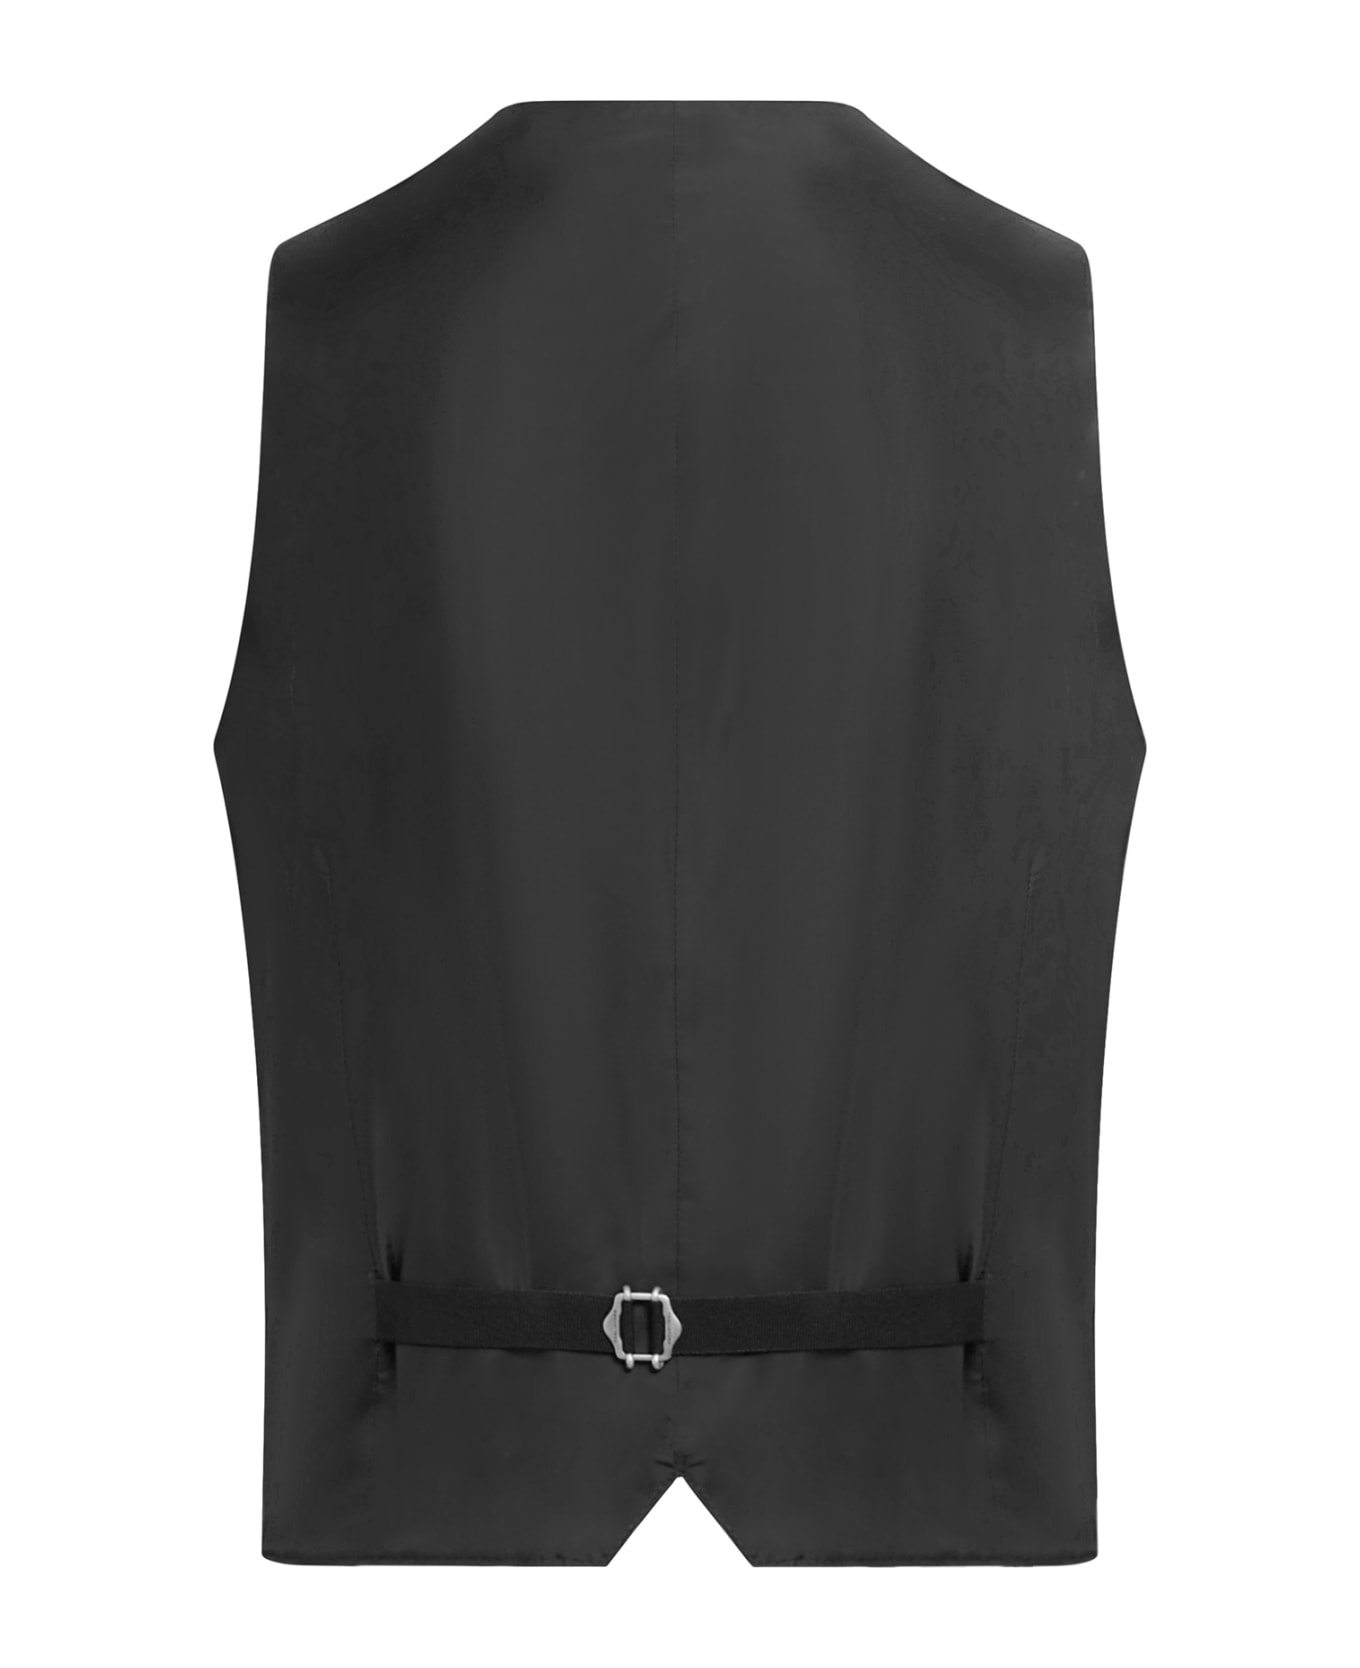 Tagliatore Suit+gilet - Black